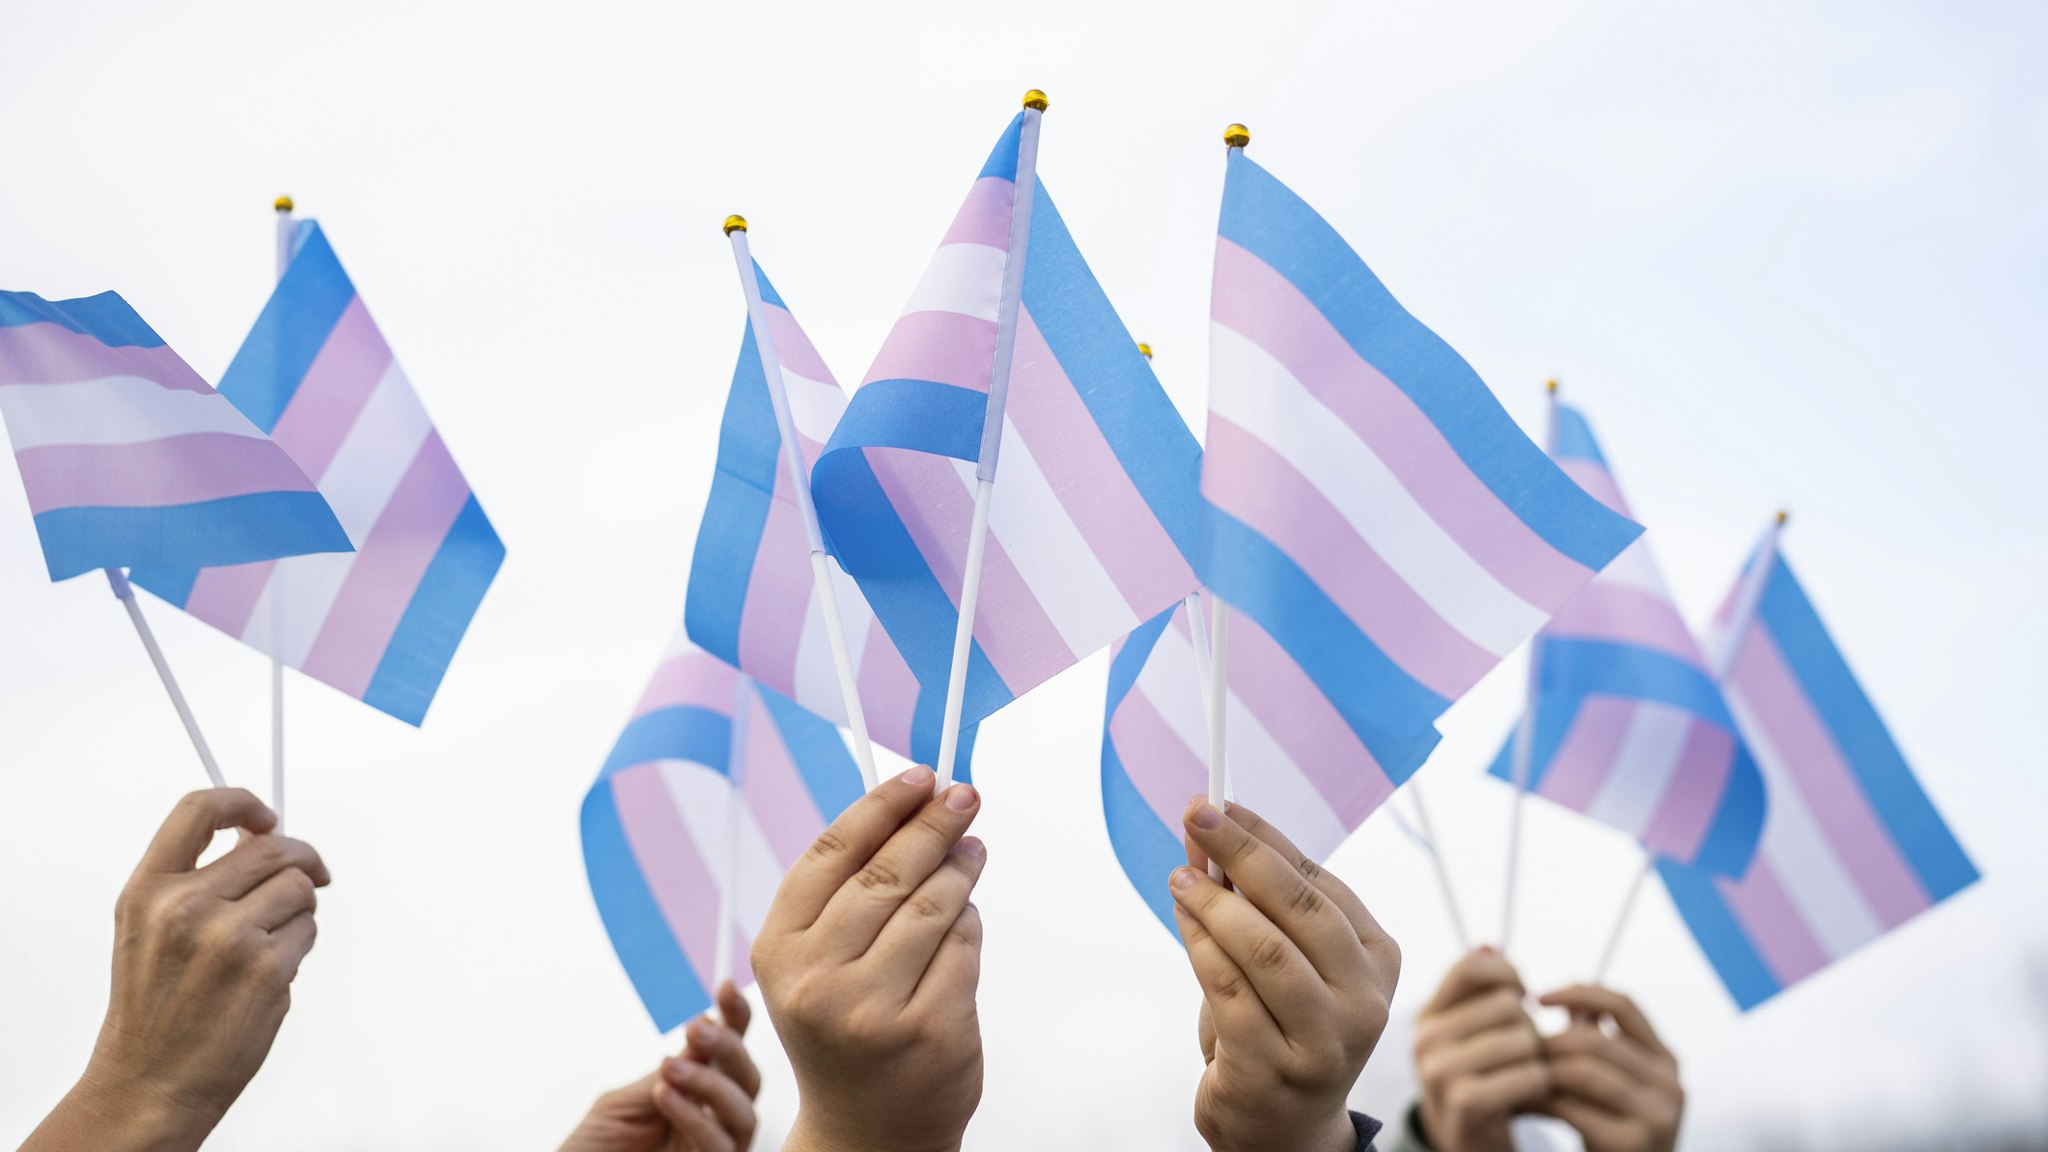 Transgender flags